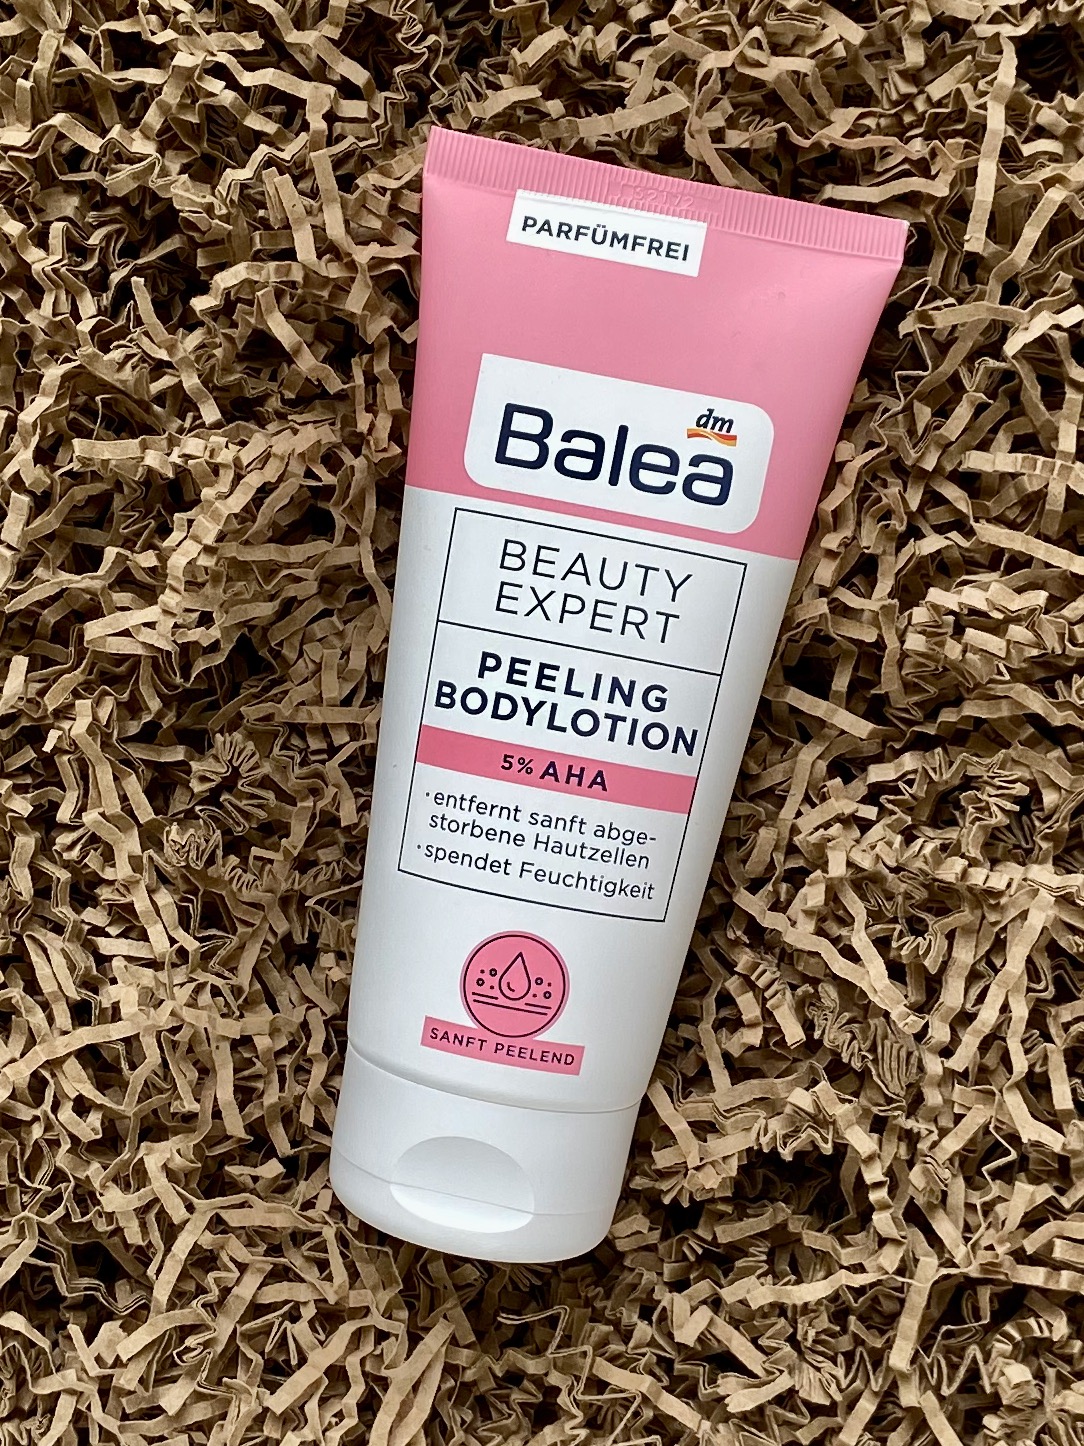 Balea Beauty Expert Peeling Bodylotion 5% AHA Körperpflege